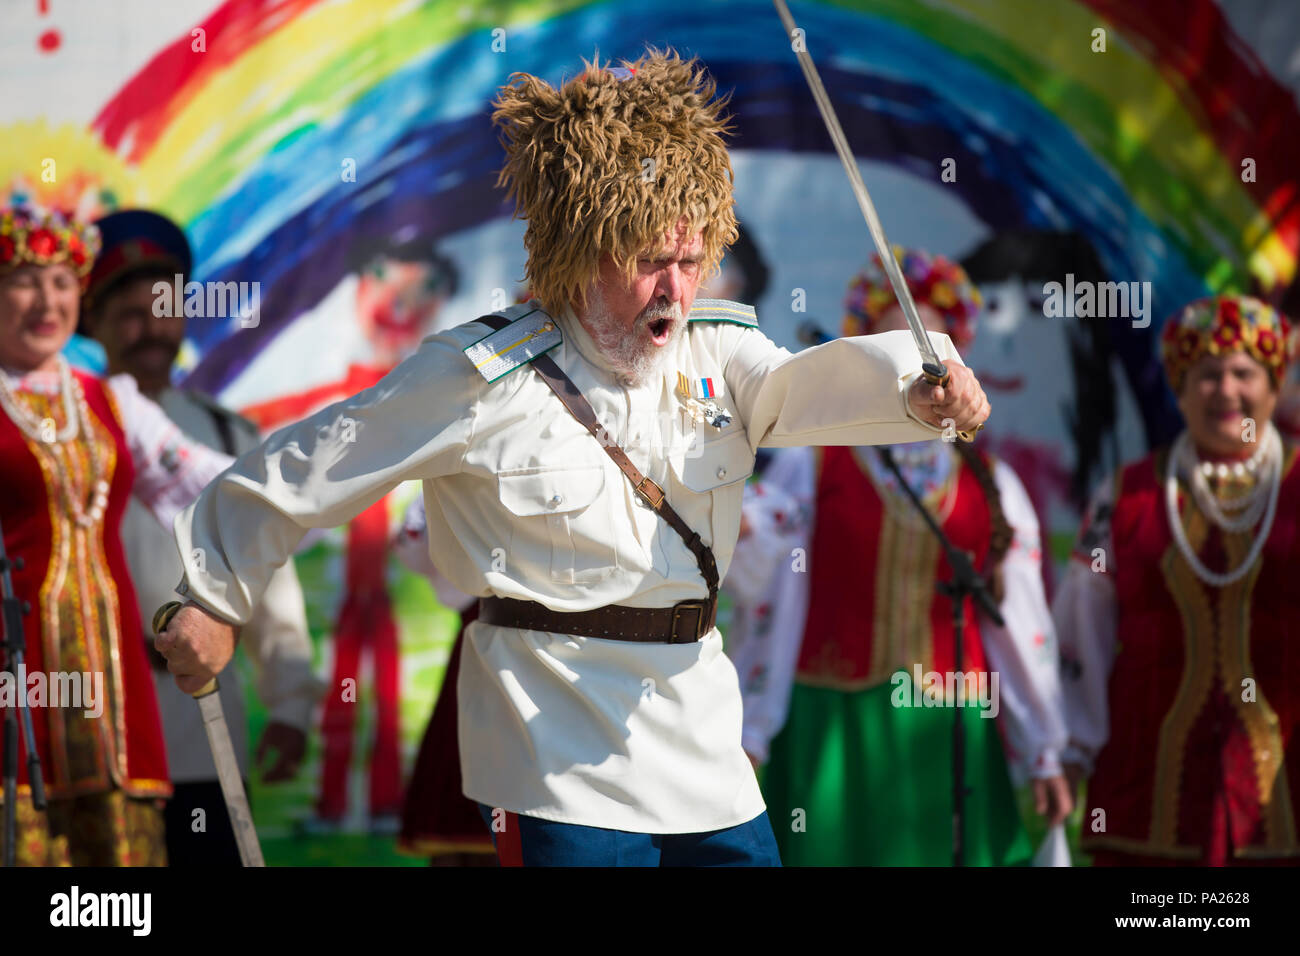 L'homme russe forme épée dans la performance Banque D'Images